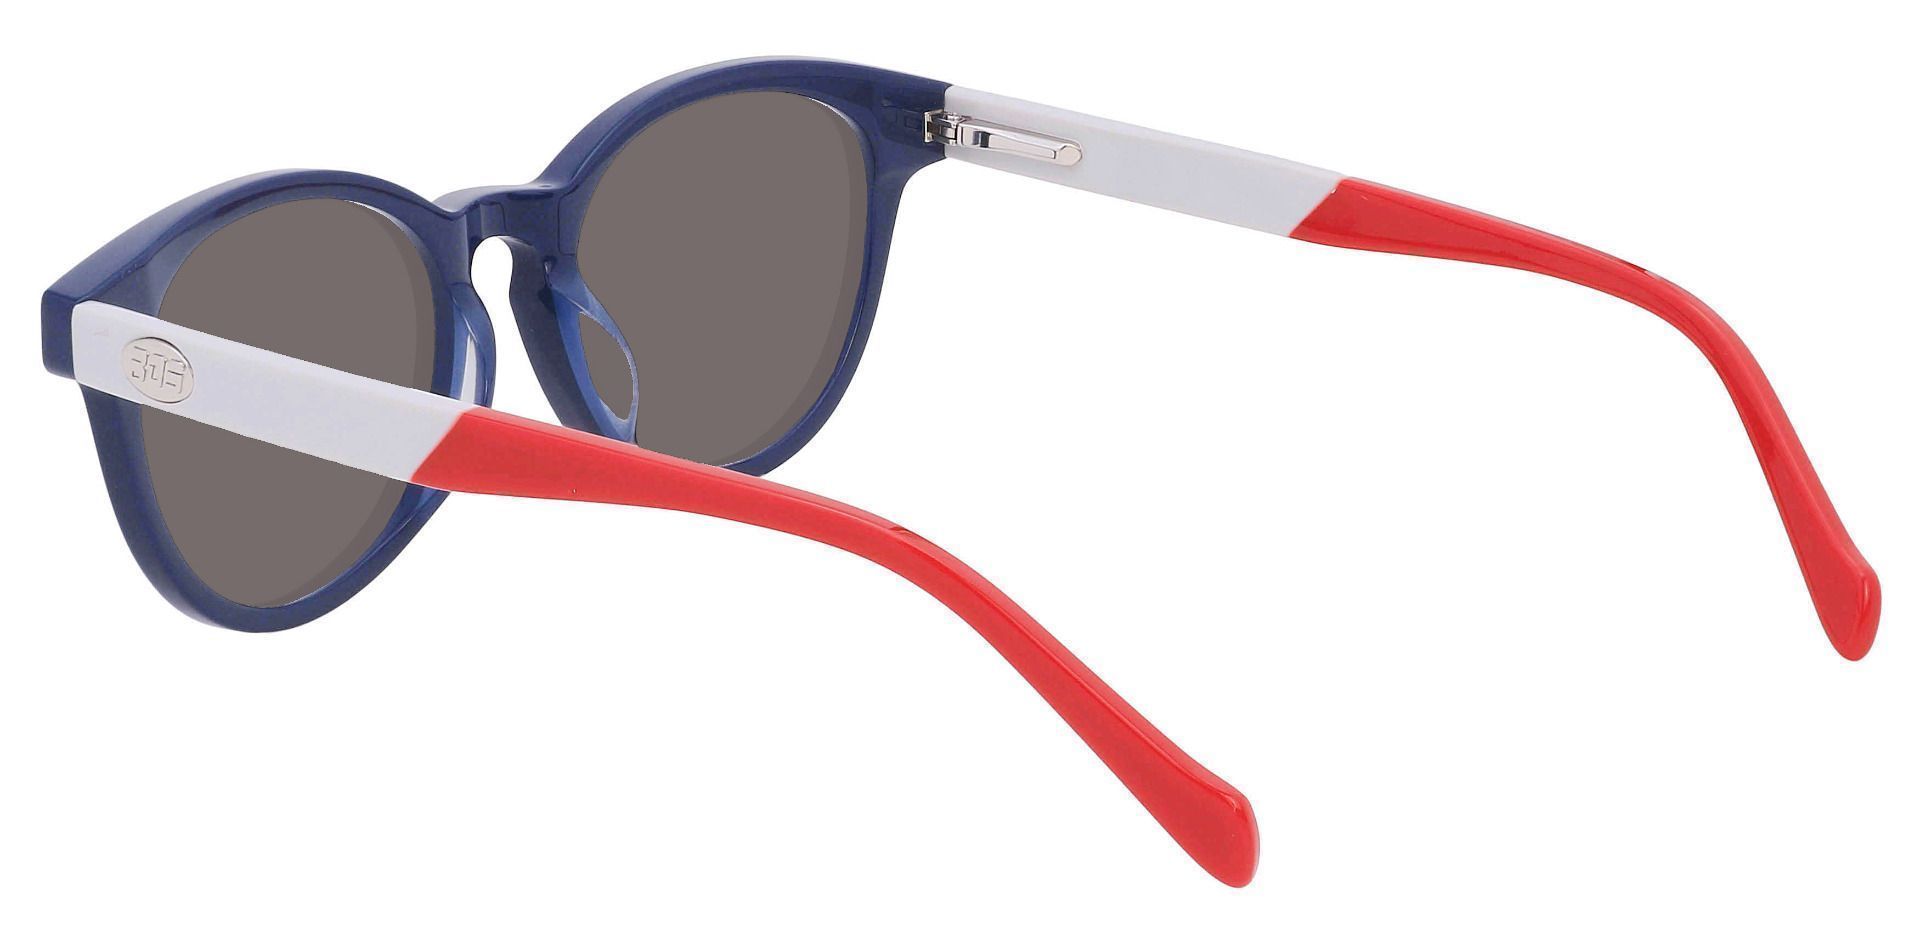 Revere Oval Reading Sunglasses - Blue Frame With Gray Lenses